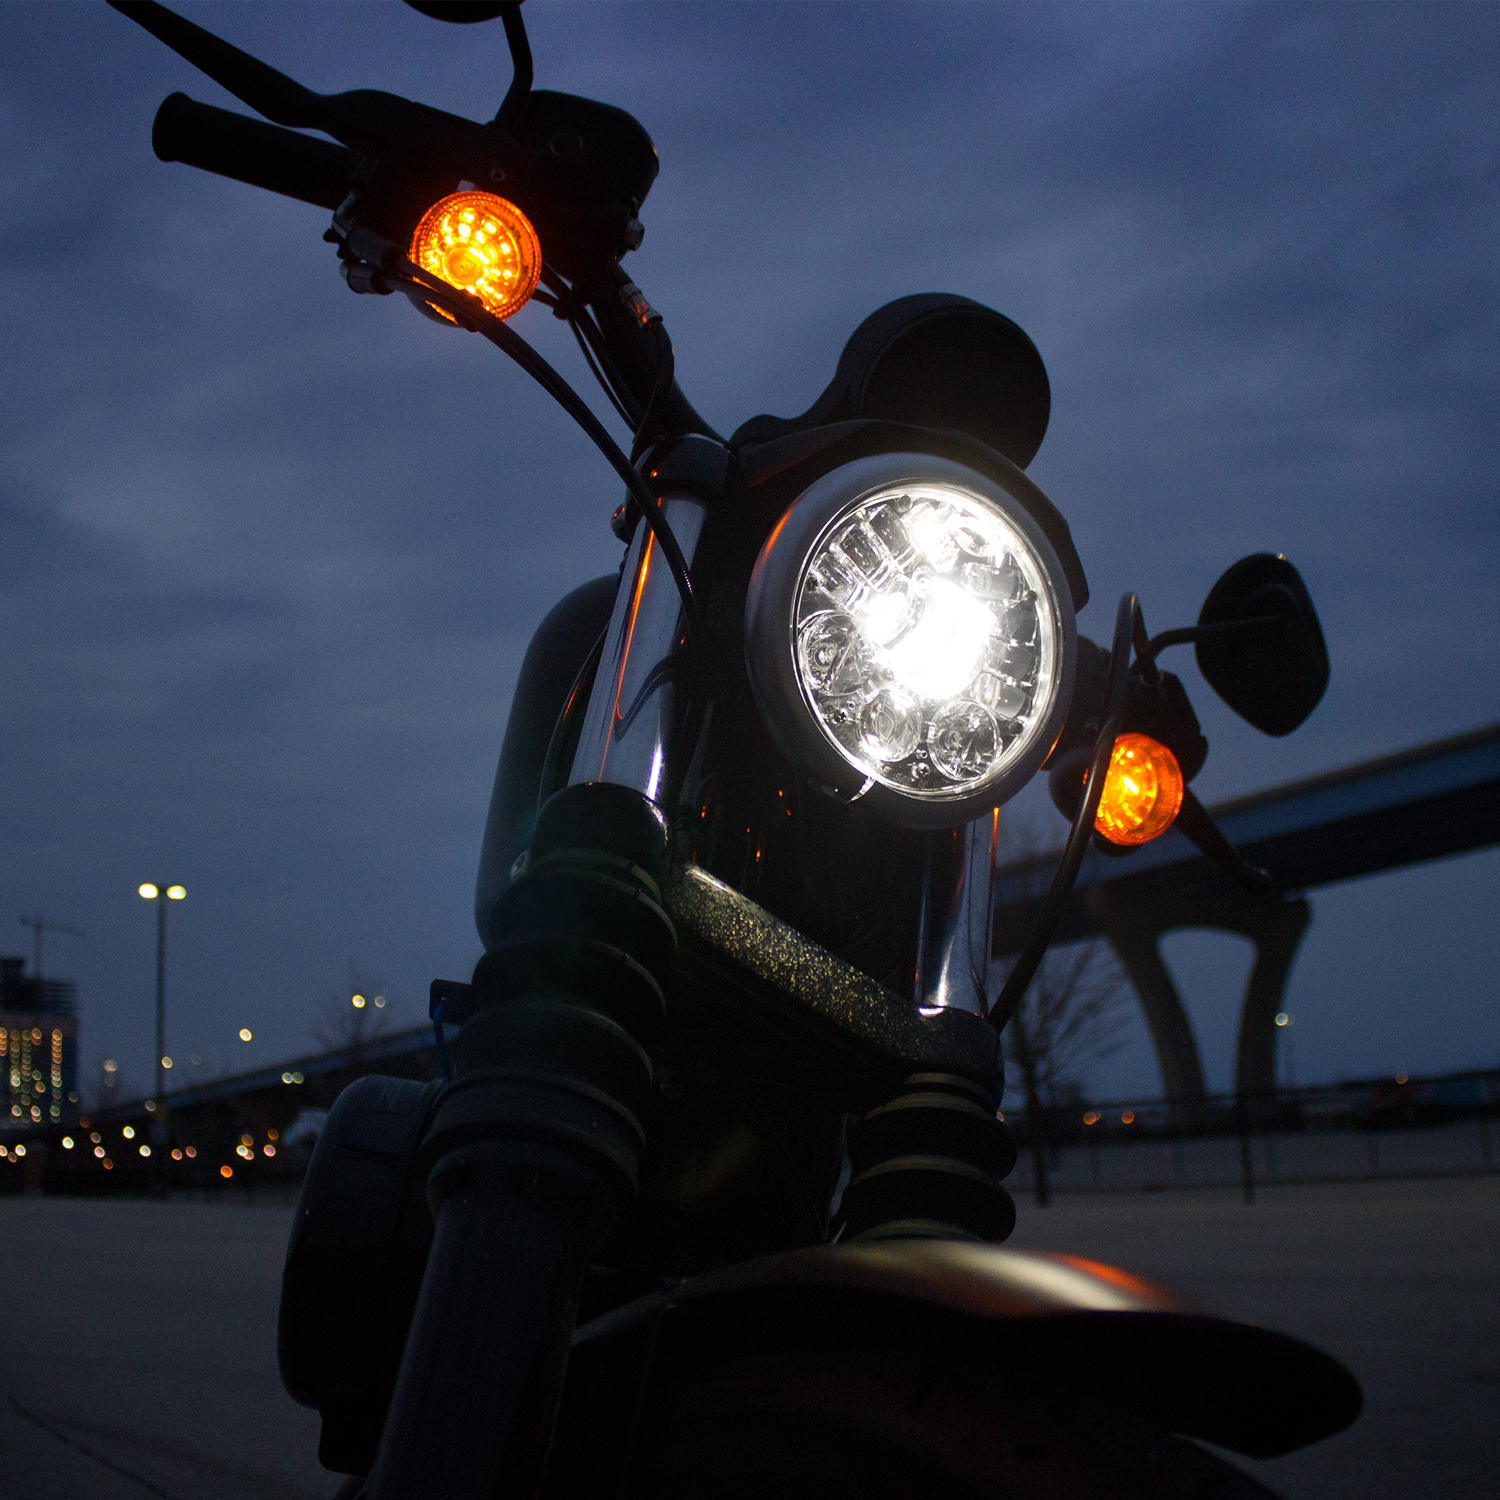 New Dynamically Adaptive Headlight – Model 8690 Adaptive Motorcycle Headlight